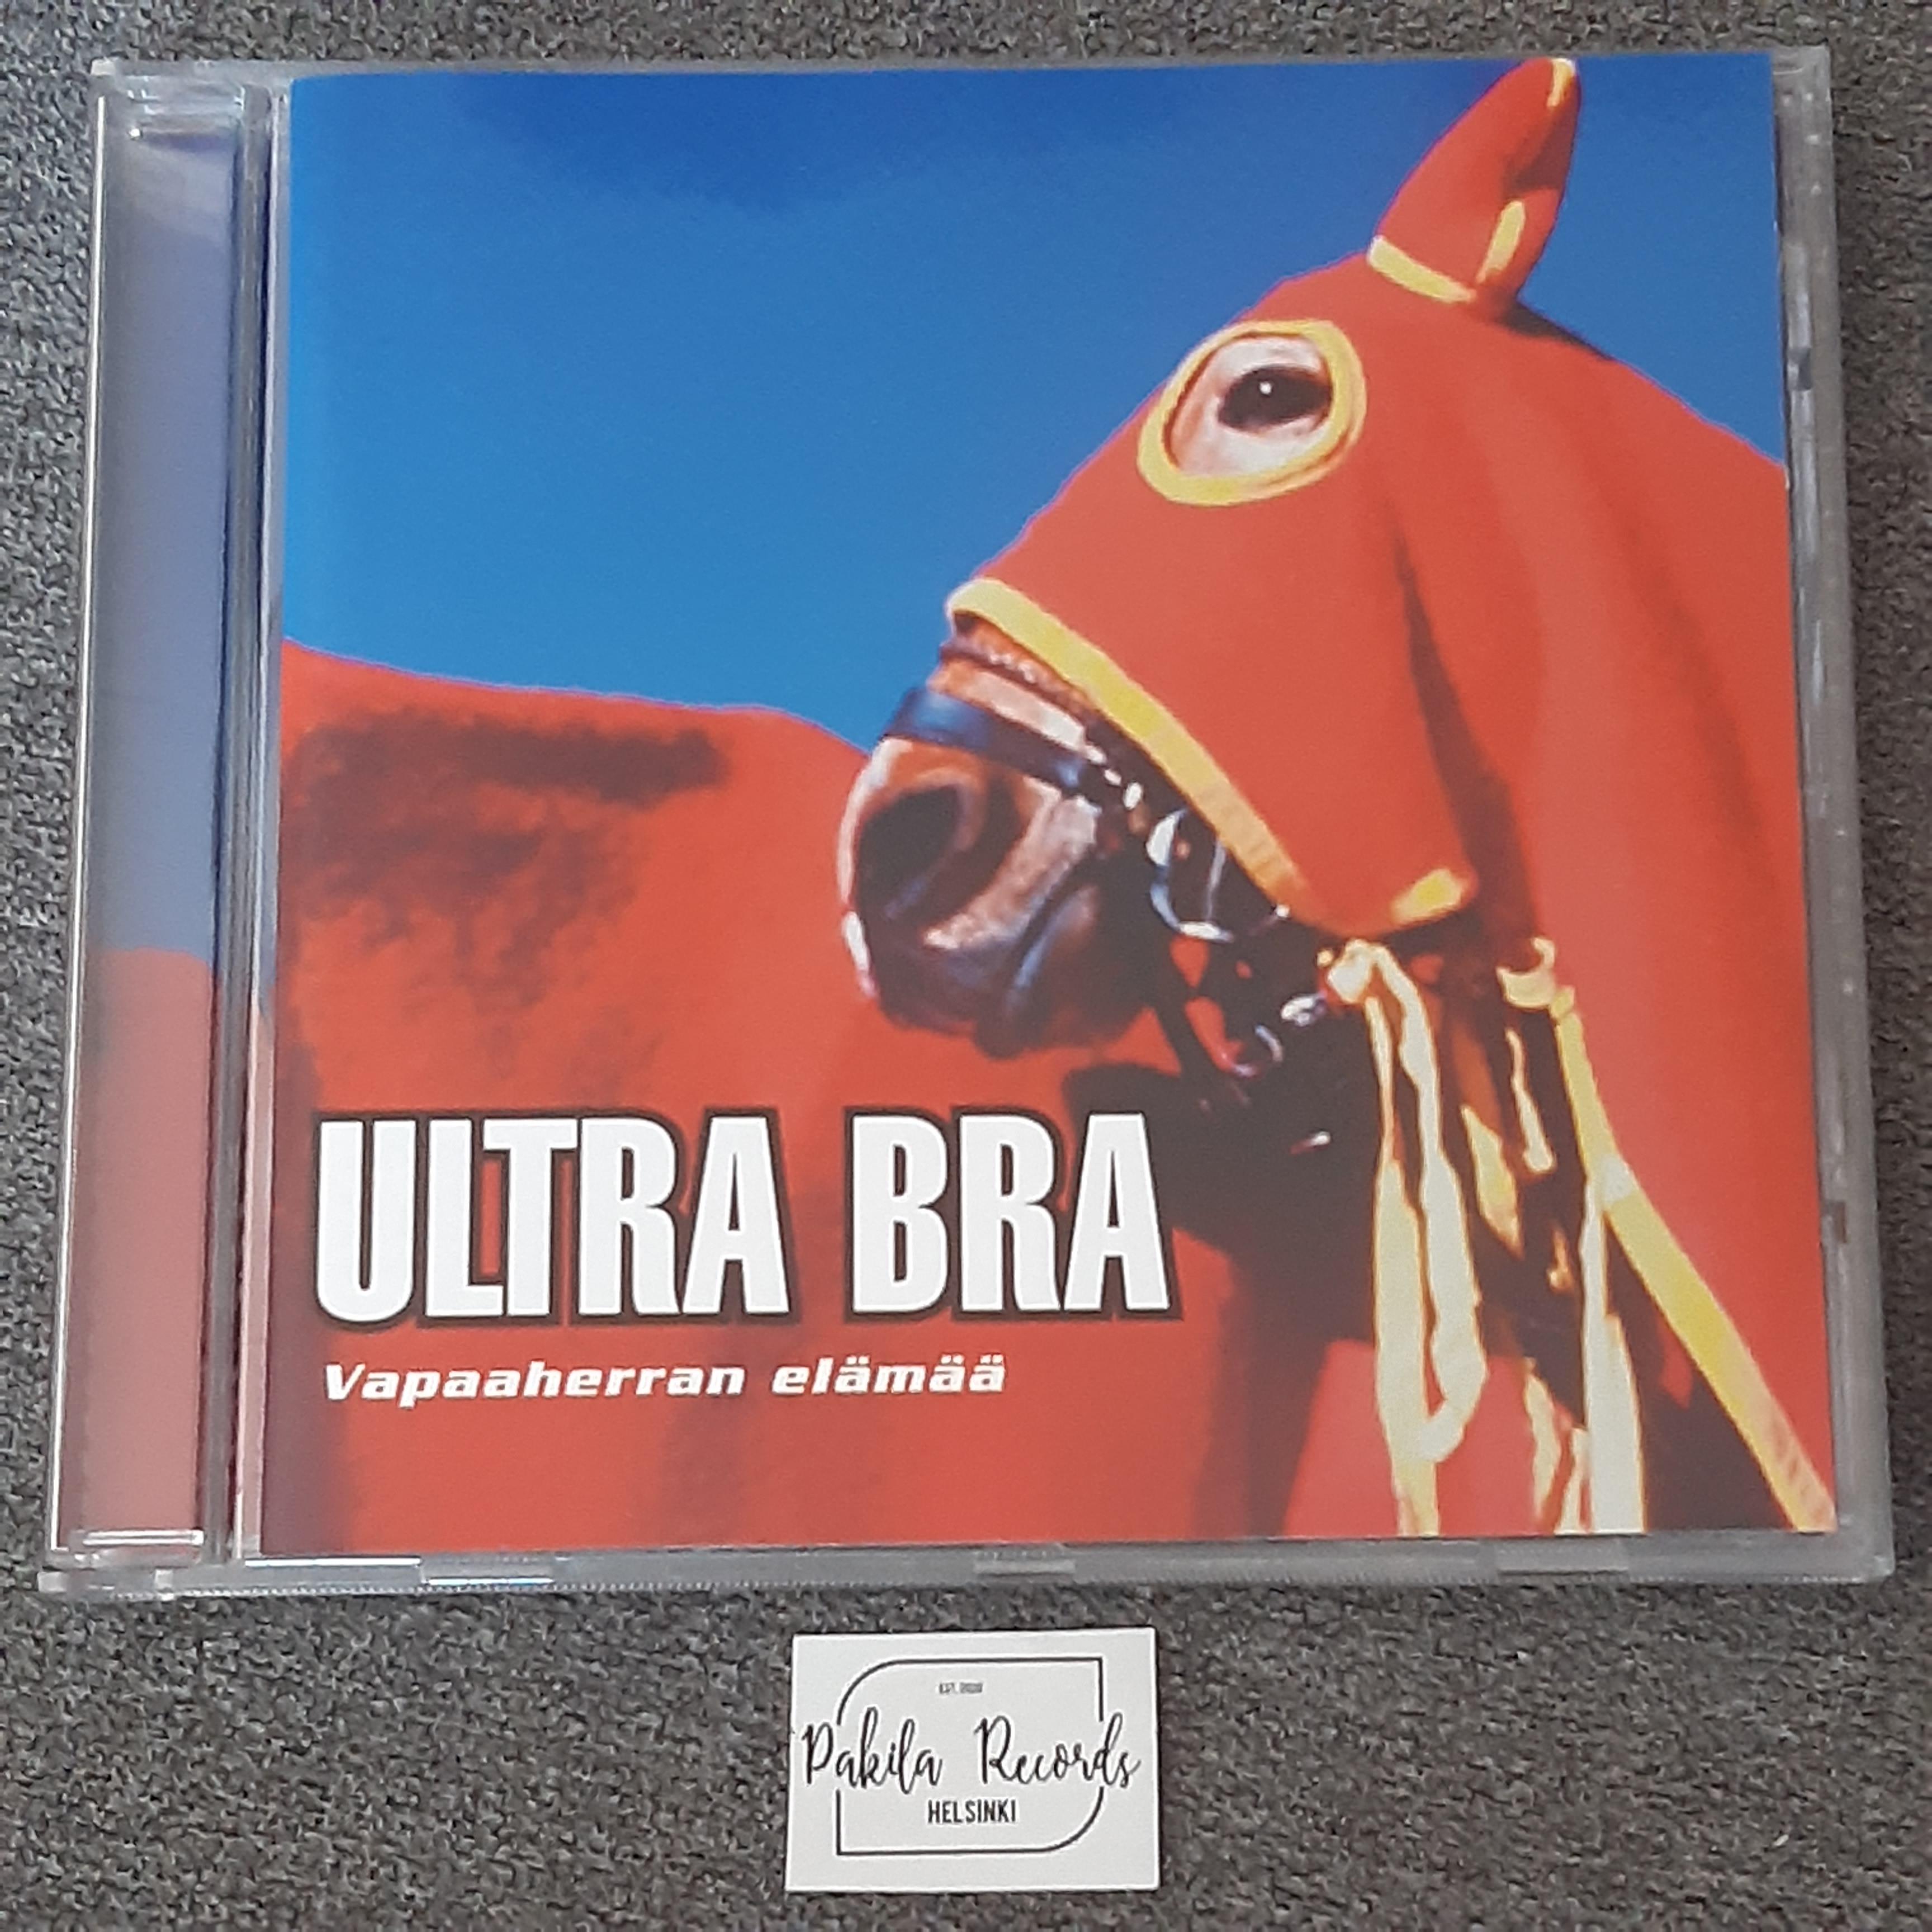 Ultra Bra - Vapaaherran elämää - CD (käytetty)